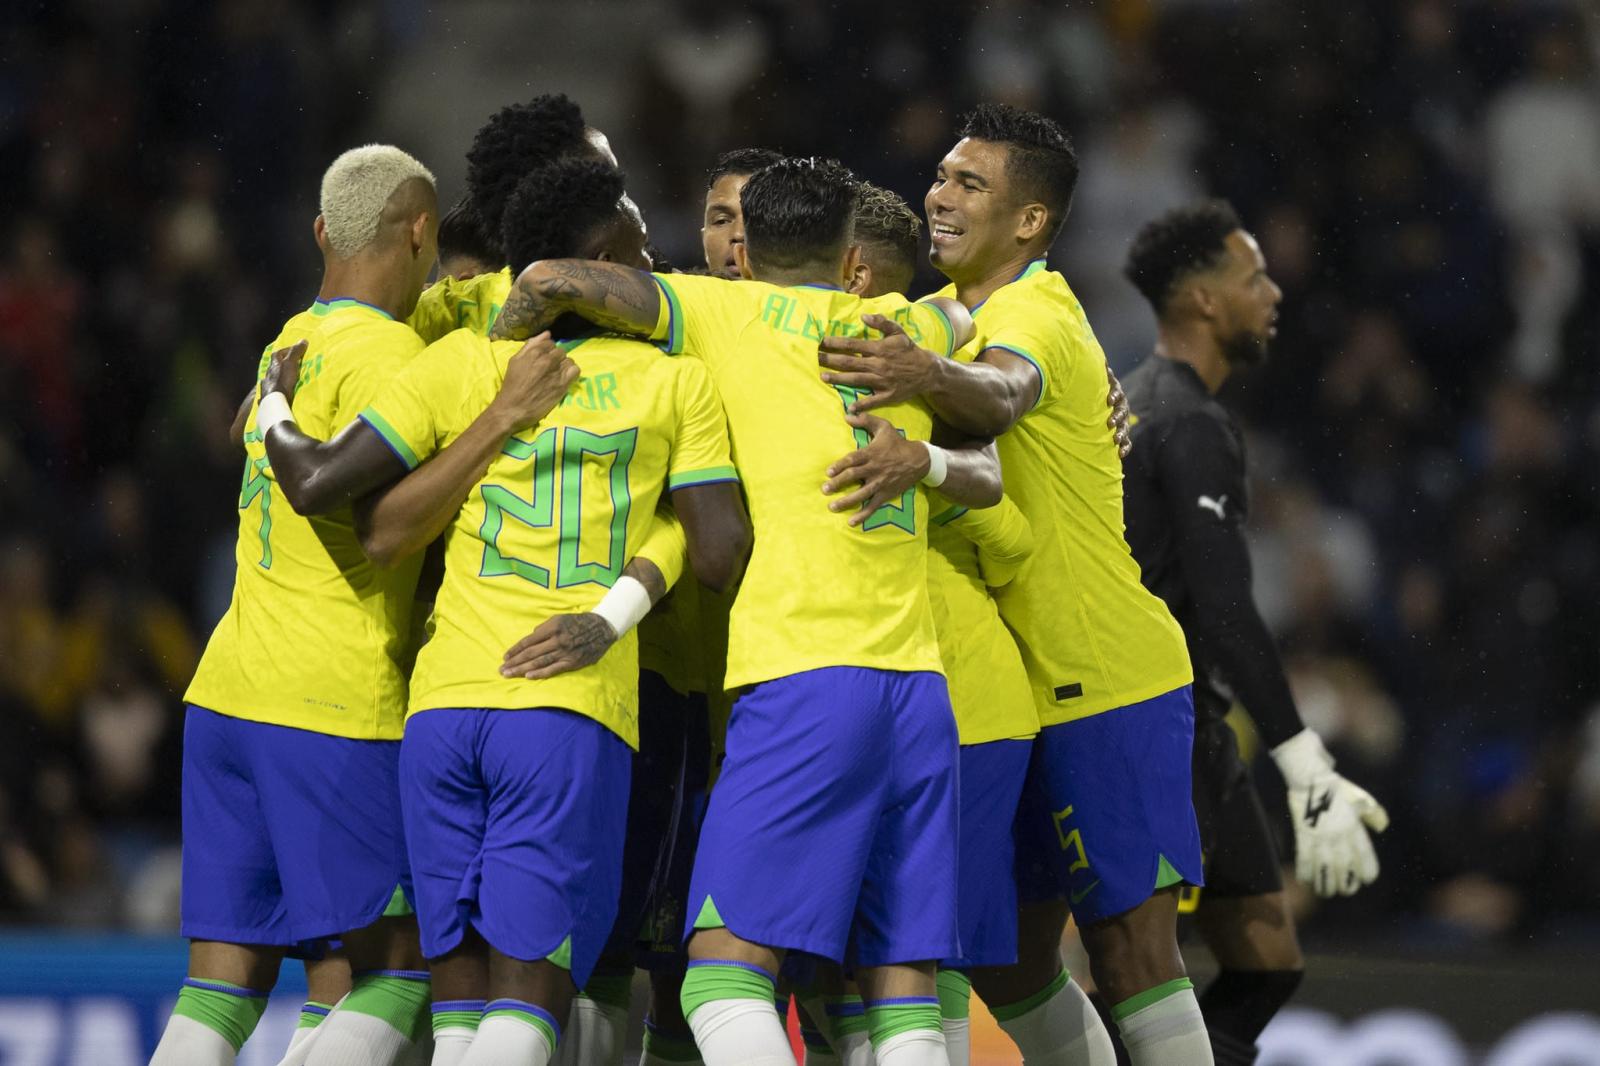 Copa do Mundo: veja o horário dos bancos em dias de jogos do Brasil -  FETRAF-RJ/ES